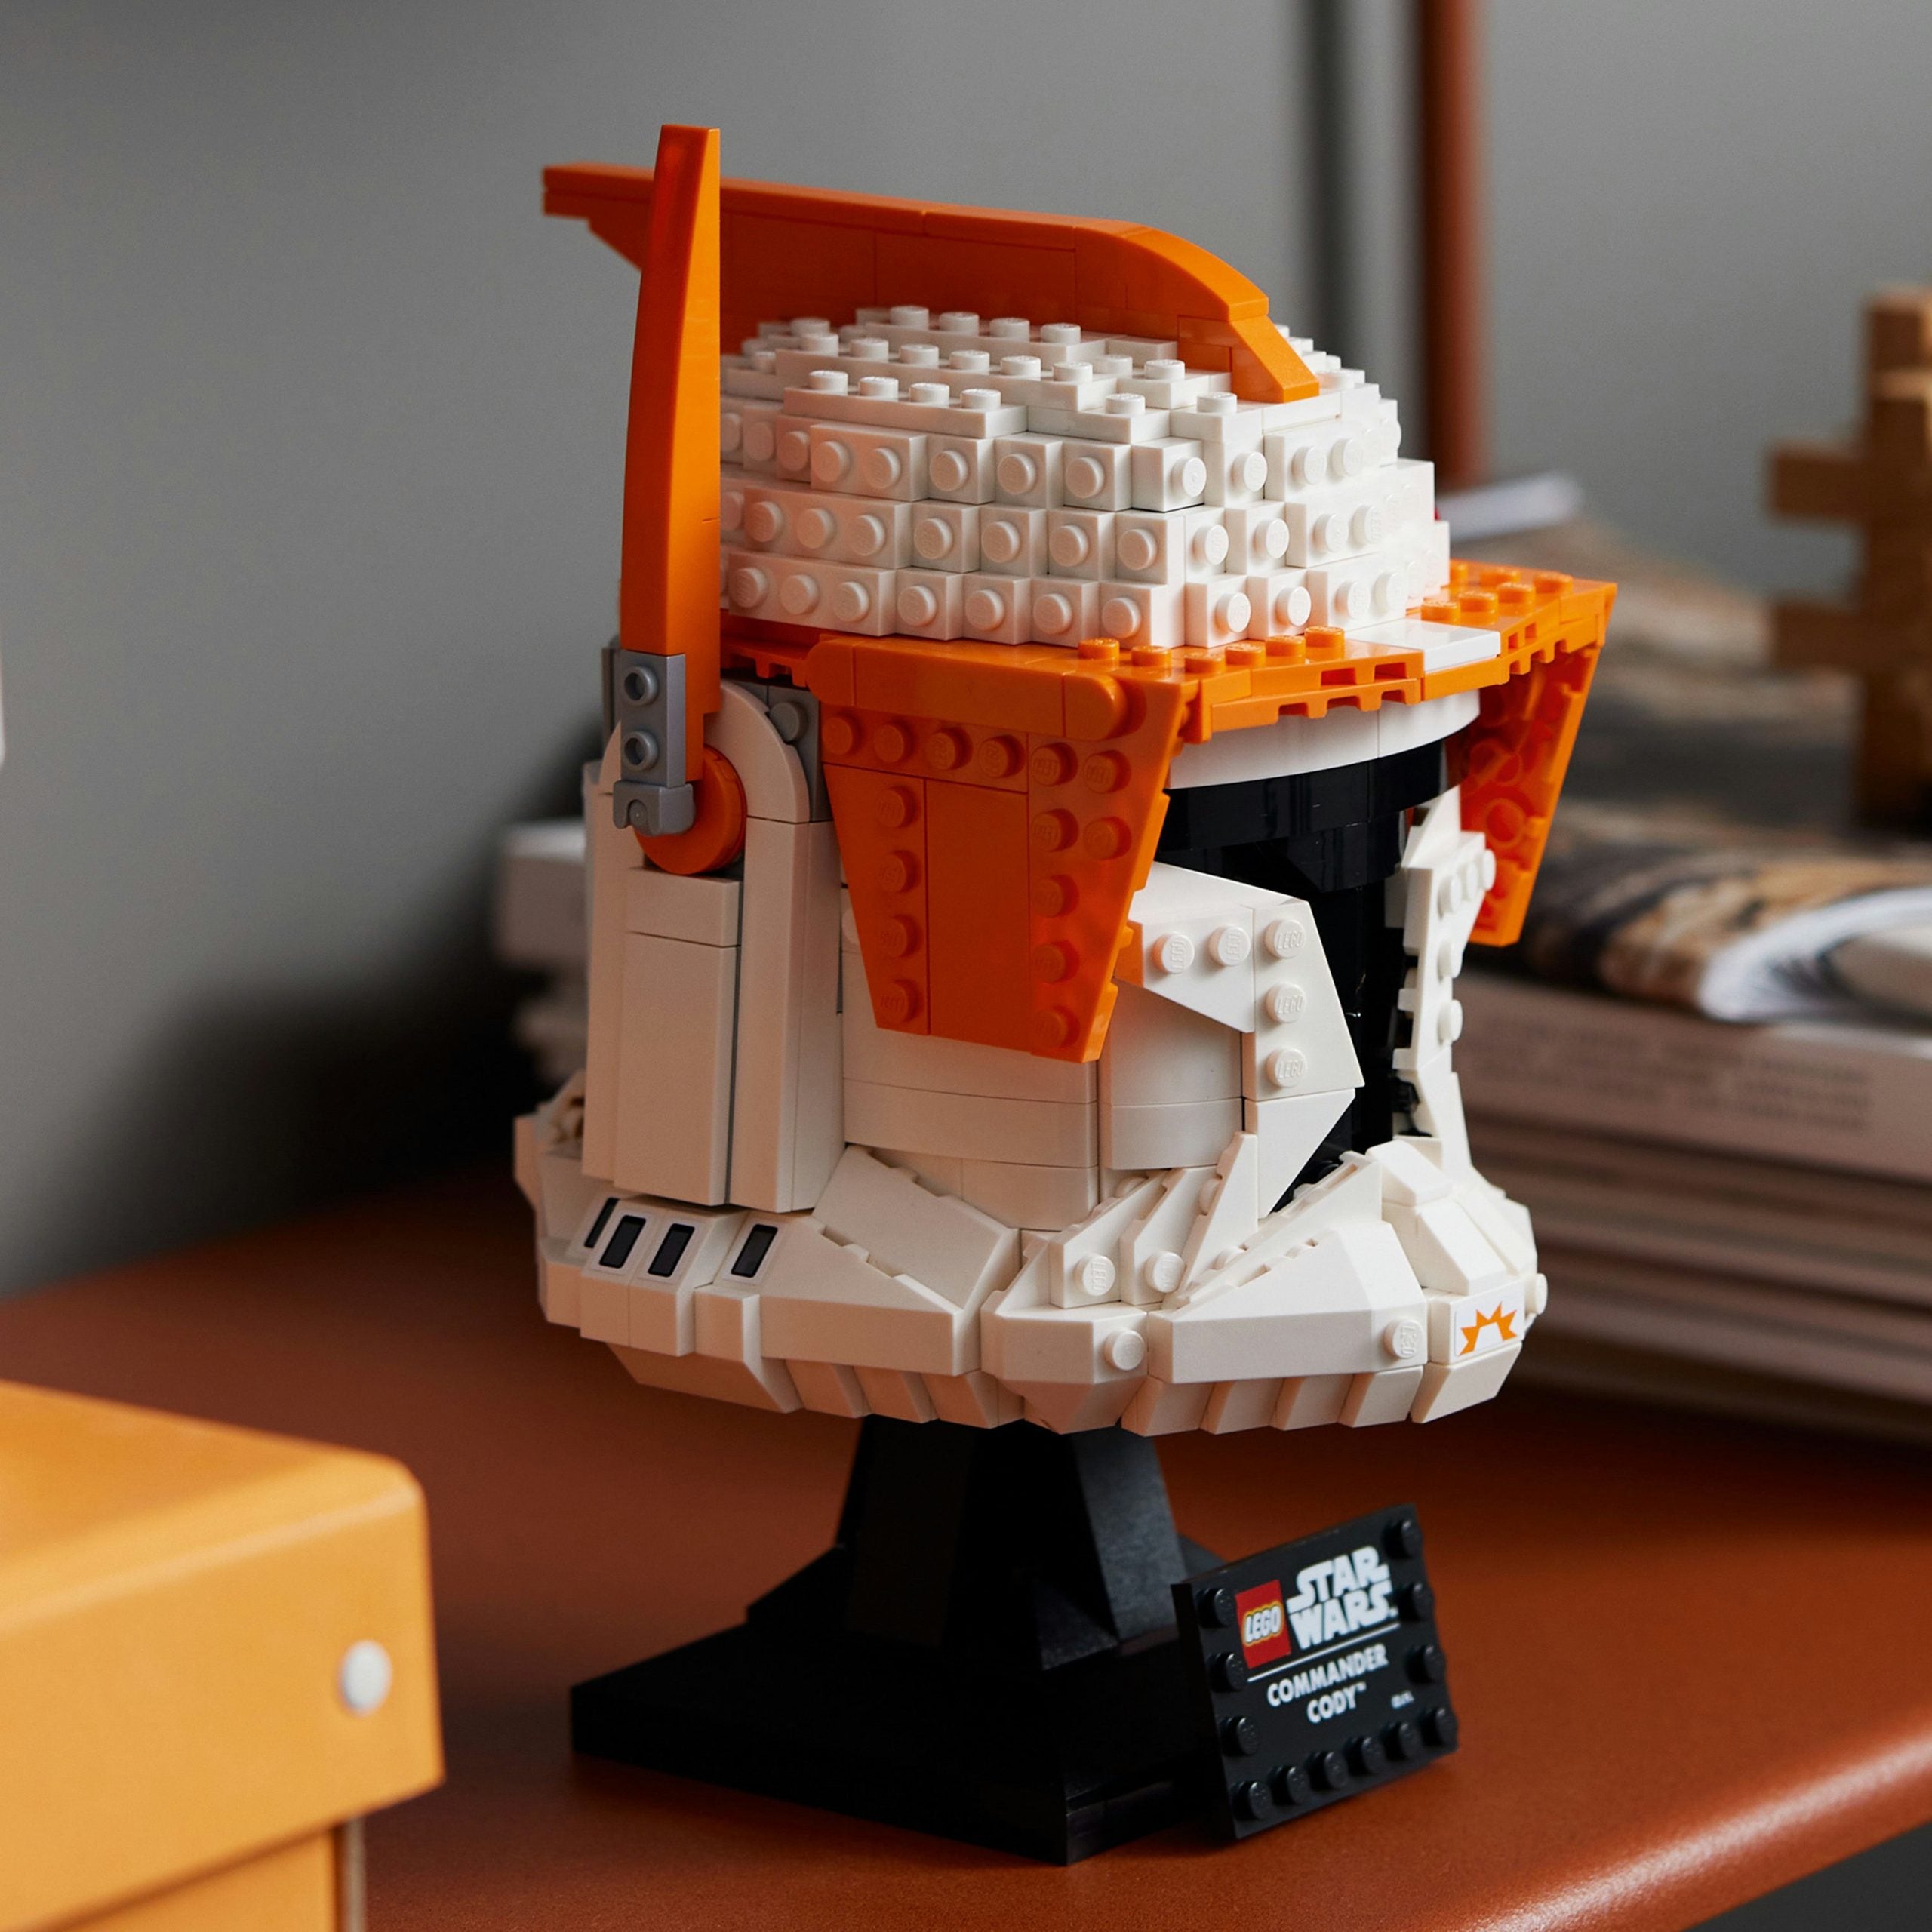 75350 - Lego - Star Wars - Casco del Comandante clone Cody